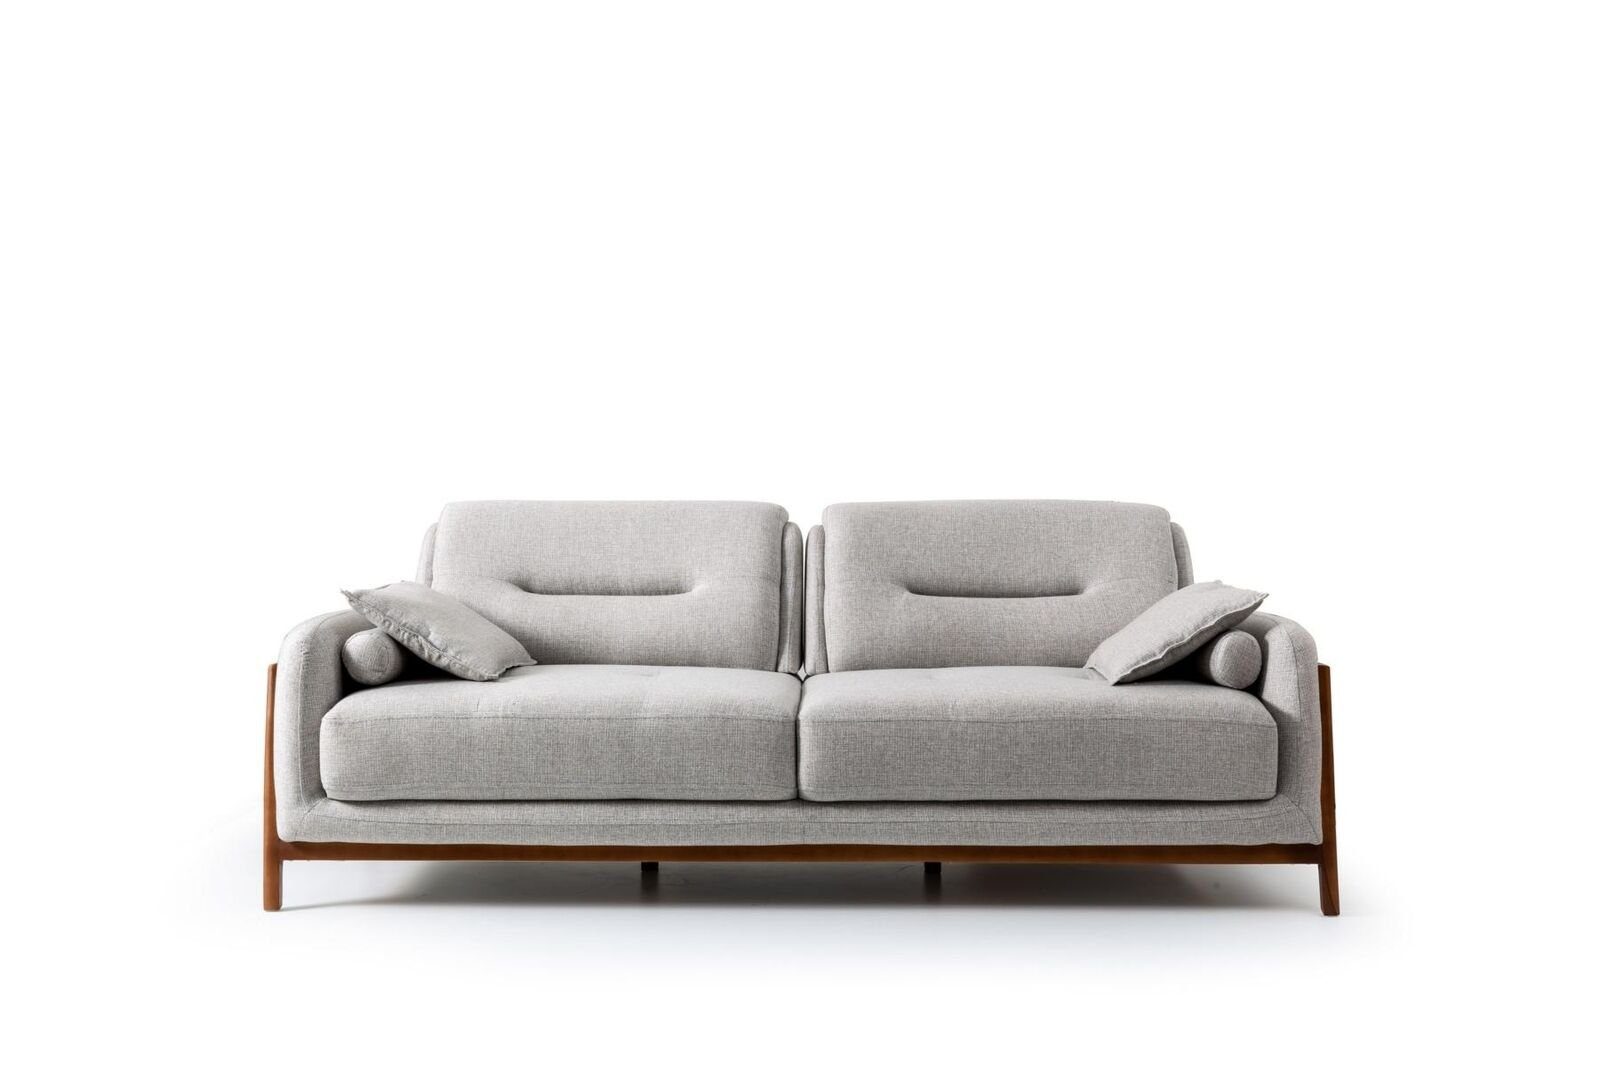 JVmoebel 3-Sitzer Sofa 3 Sitzer Dreisitzer Möbel in Wohnzimmer Modern Polster Textil, 1 Teile, Made in Europa